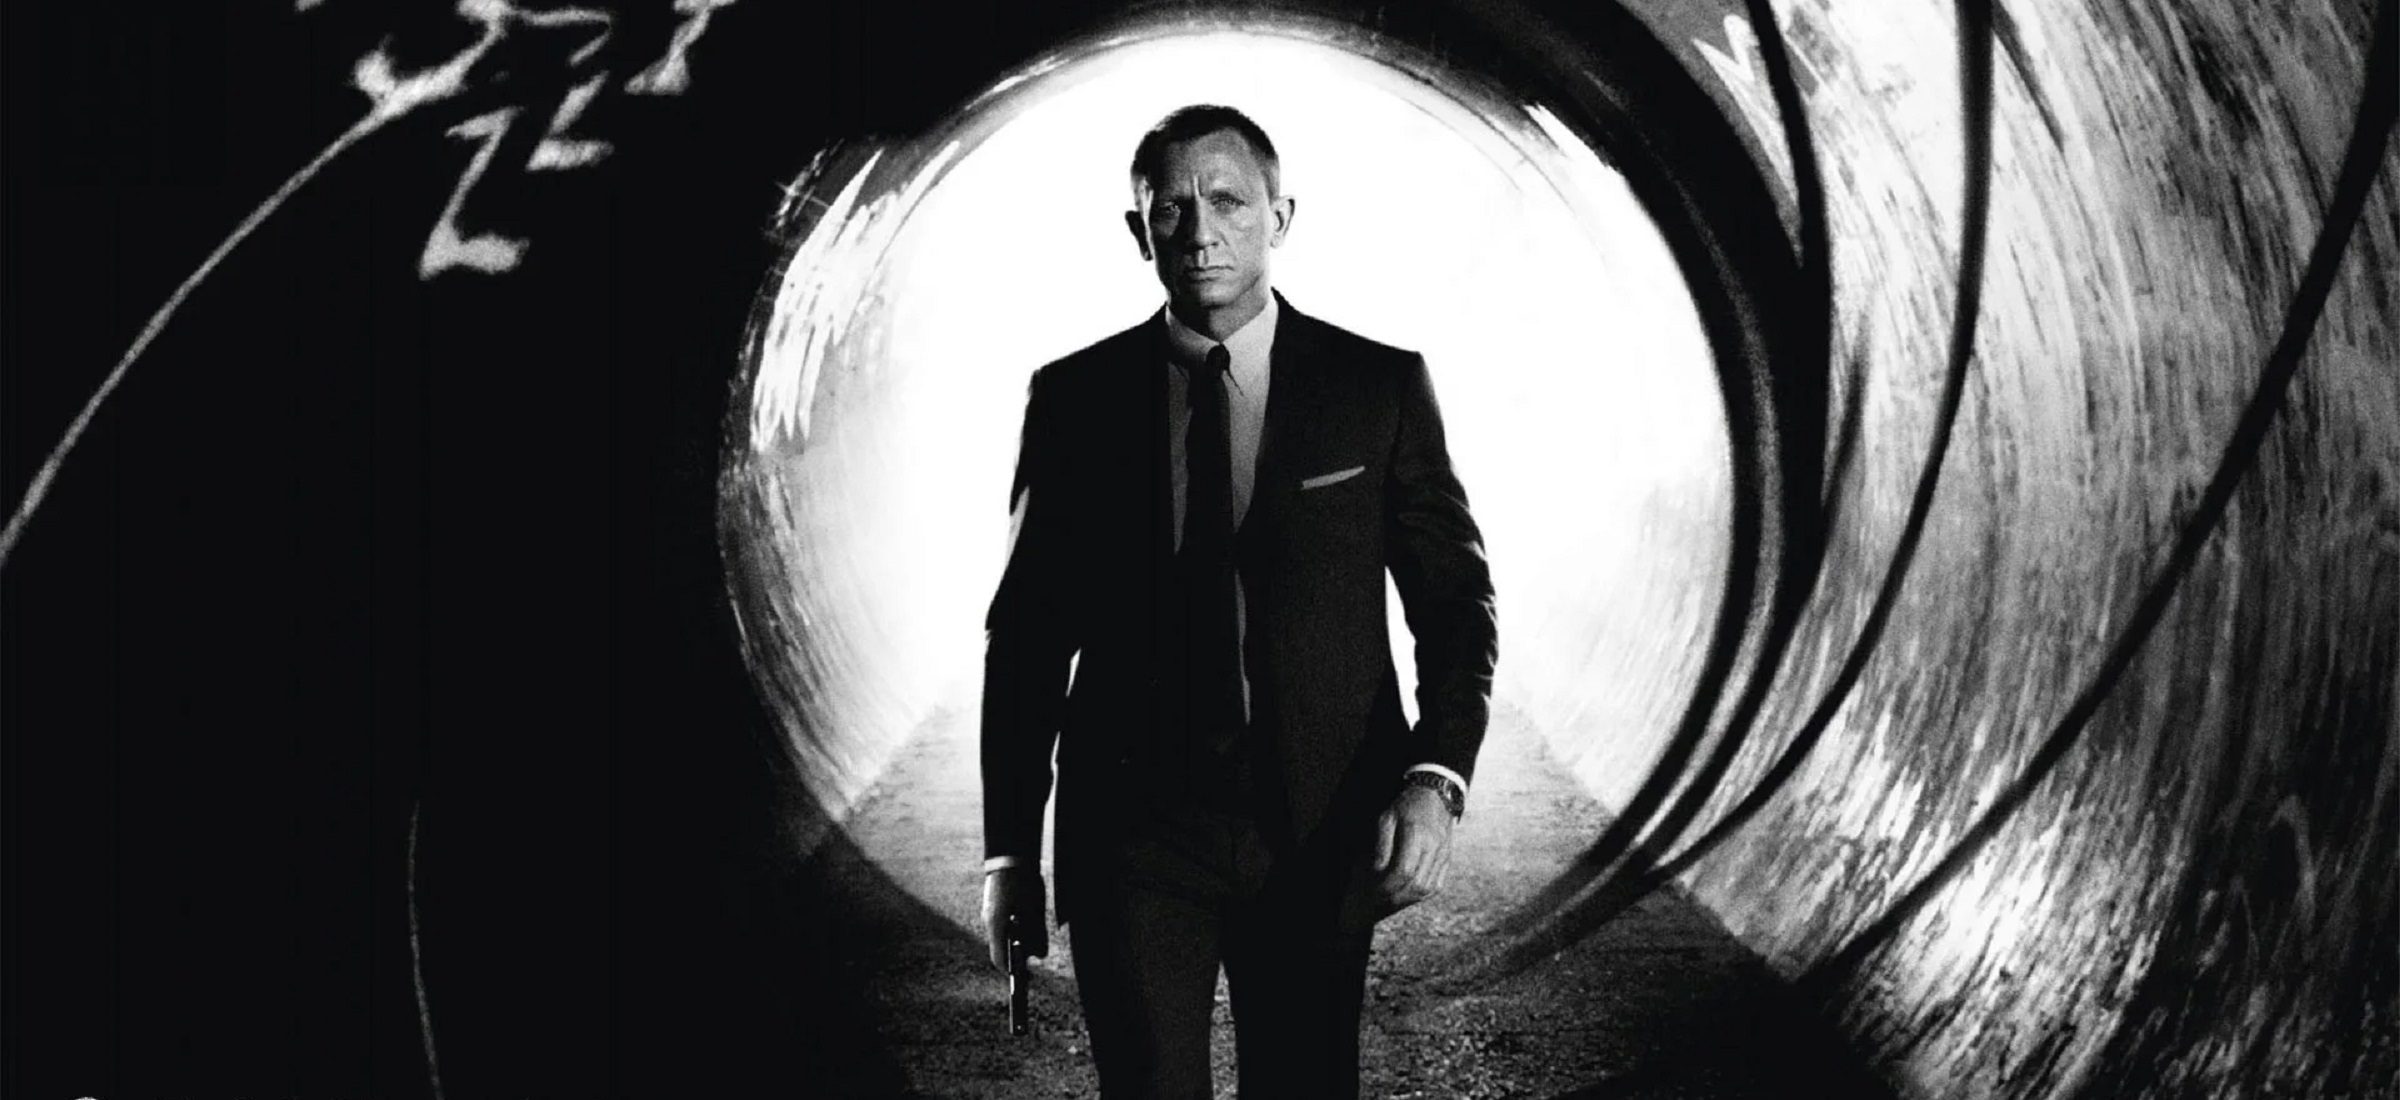 Sie können Agent 007 werden. Erst in einem Jahr einen neuen Schauspieler auswählen und jetzt die Filmpremiere "James Bond sein" 358